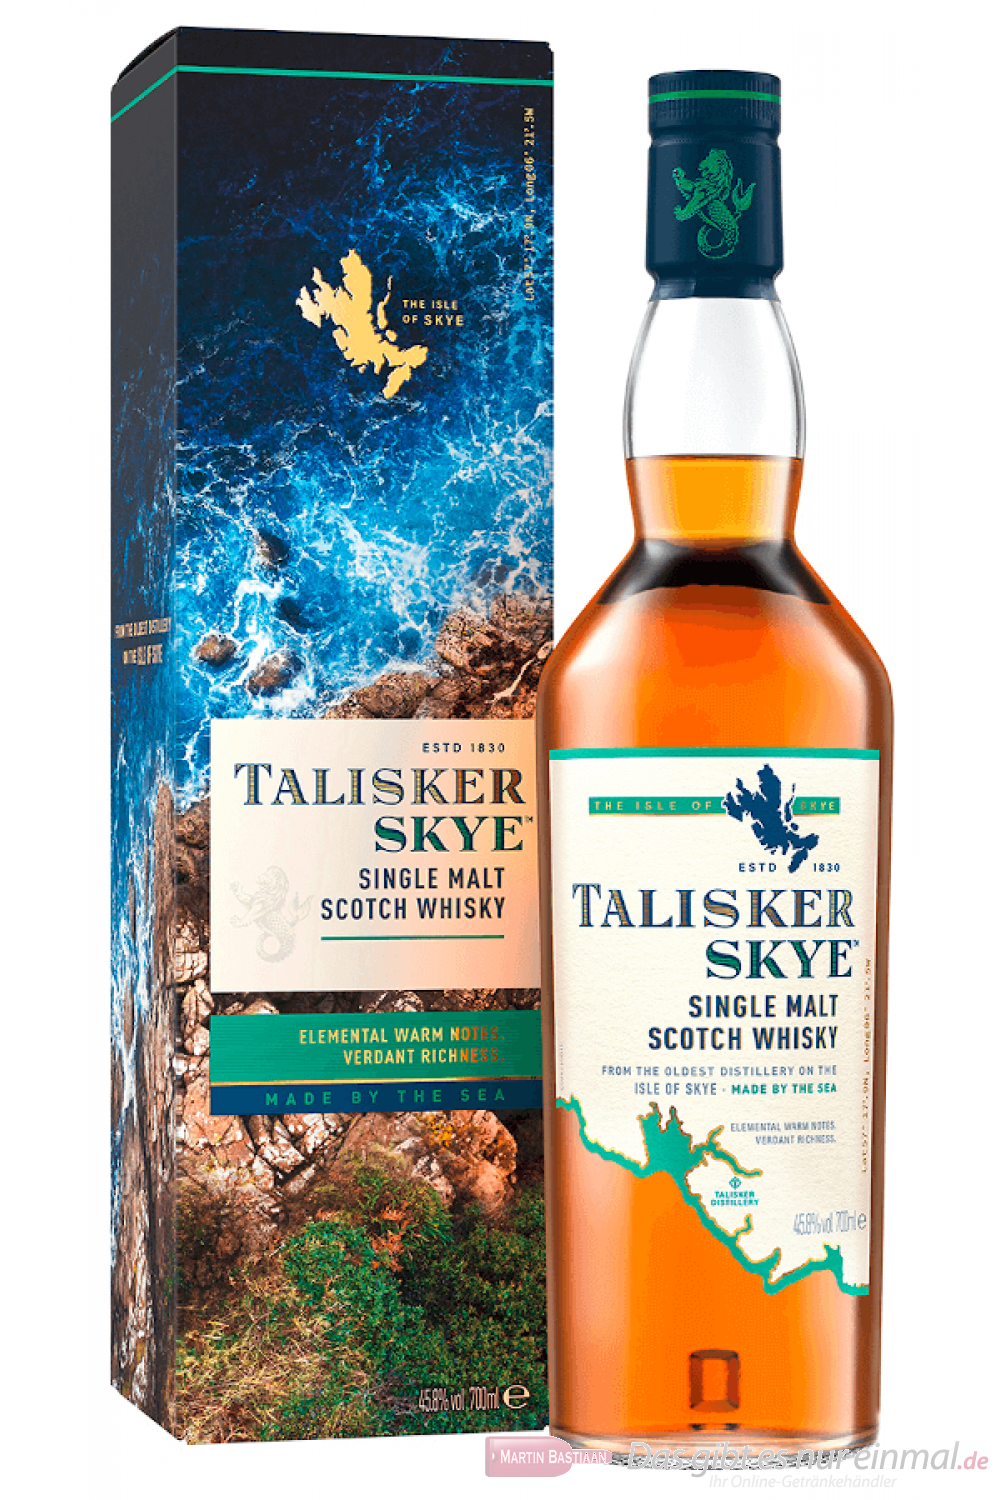 Talisker Skye Single Malt Scotch Whisky 0,7l Flasche